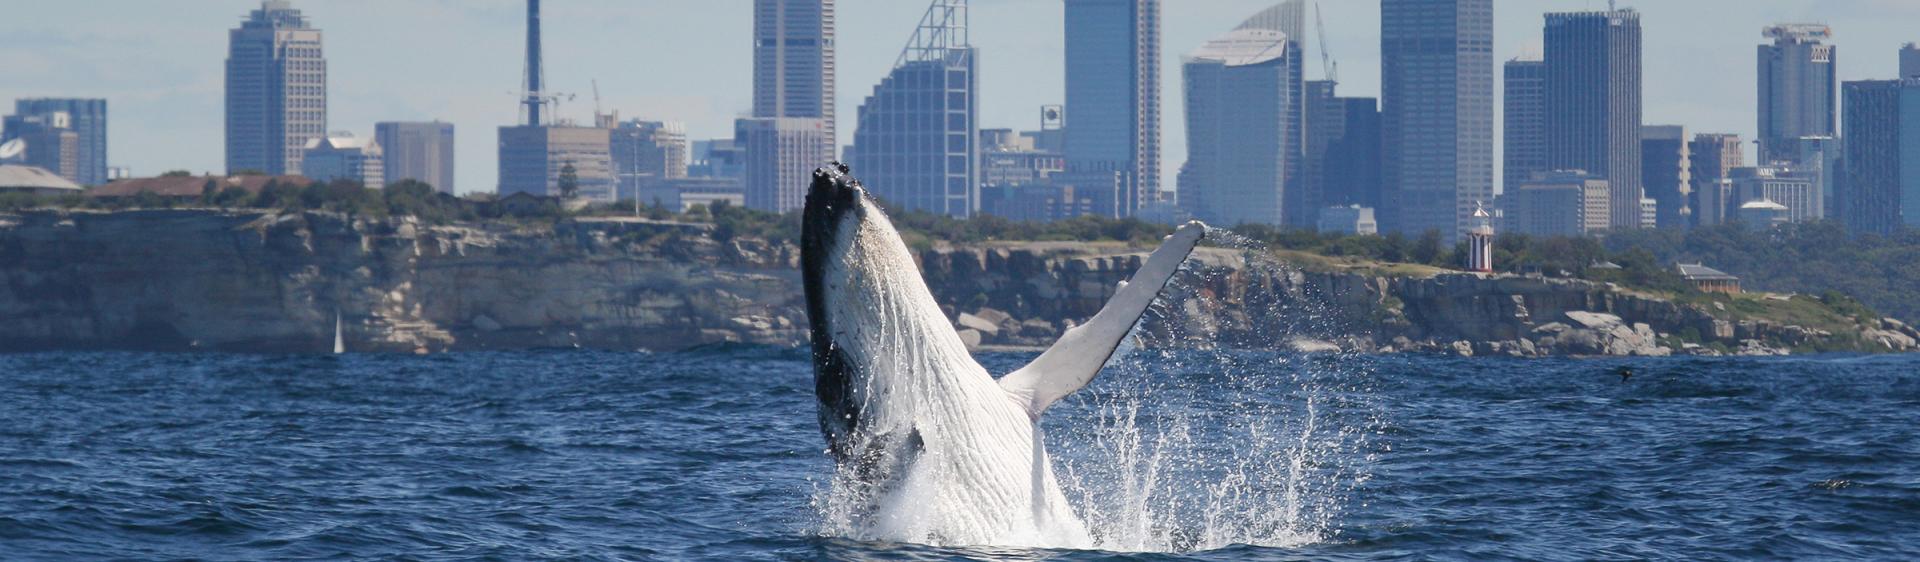 悉尼 (Sydney) 观鲸